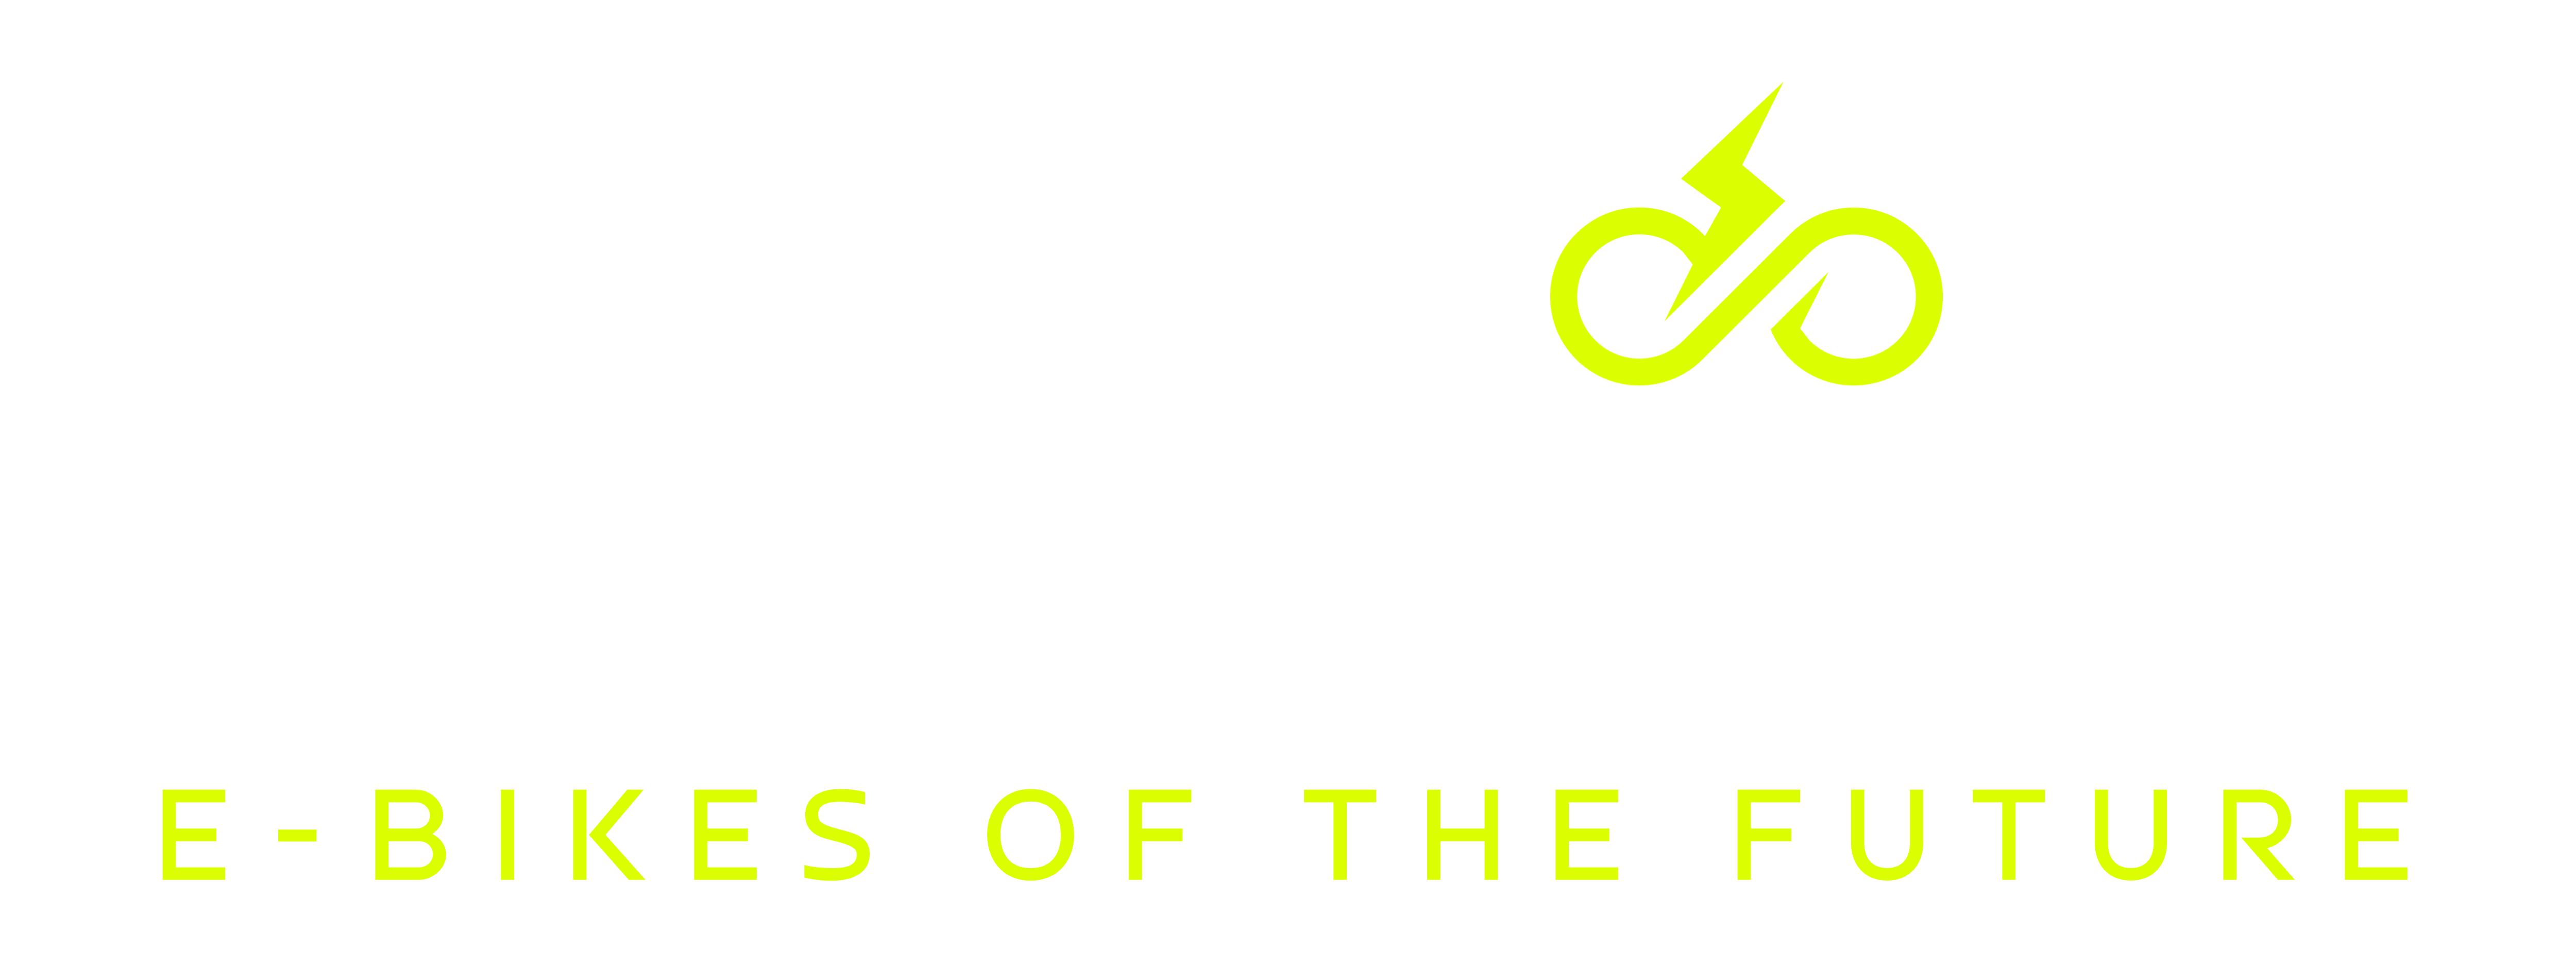 Urban Electrica E-Bikes